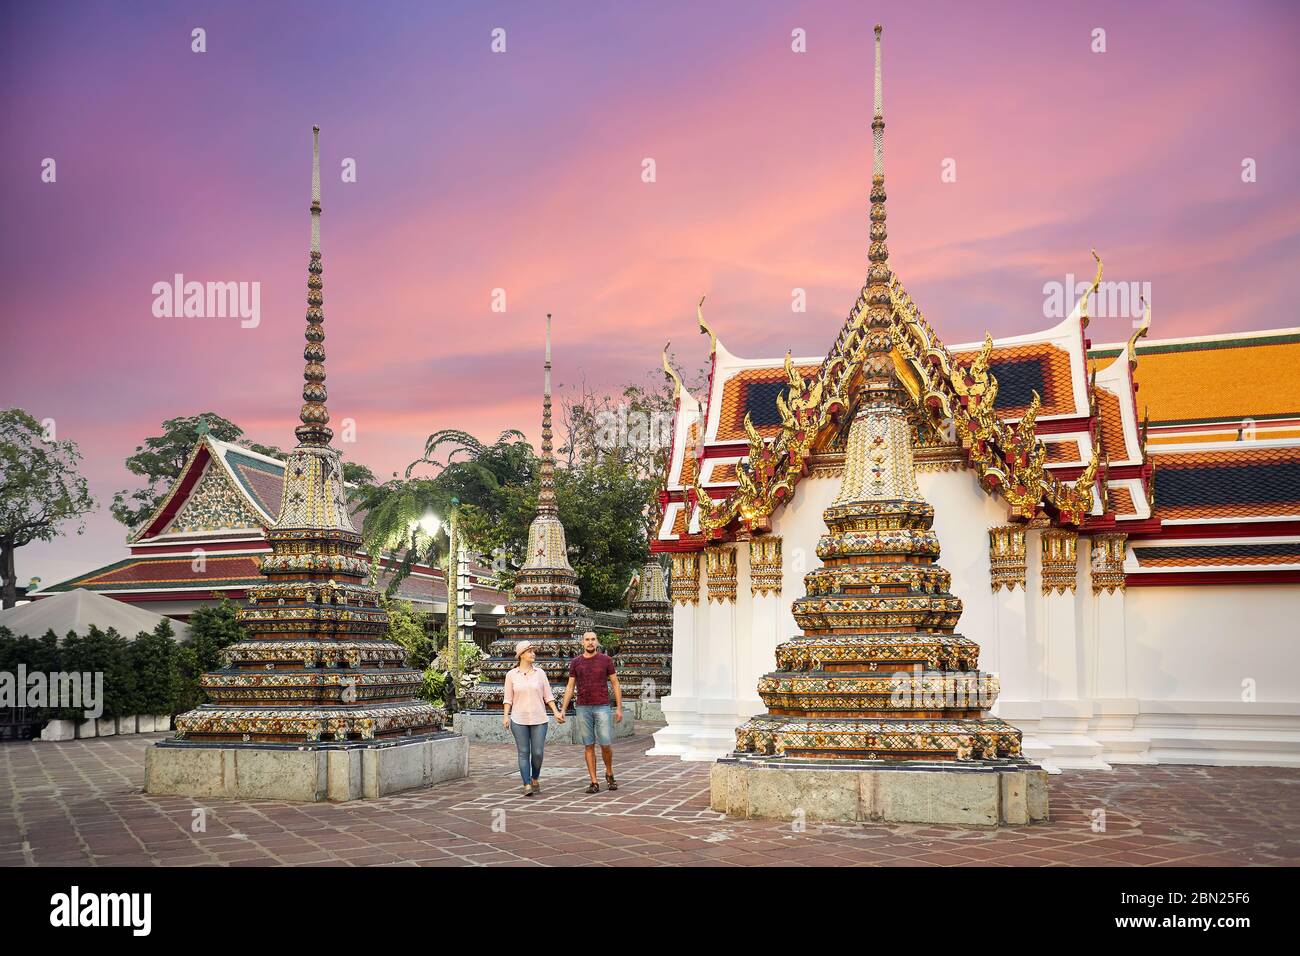 Famille jeune couple en train de marcher près de golden Chedi du Temple de Wat Pho à Bangkok, Thaïlande Banque D'Images